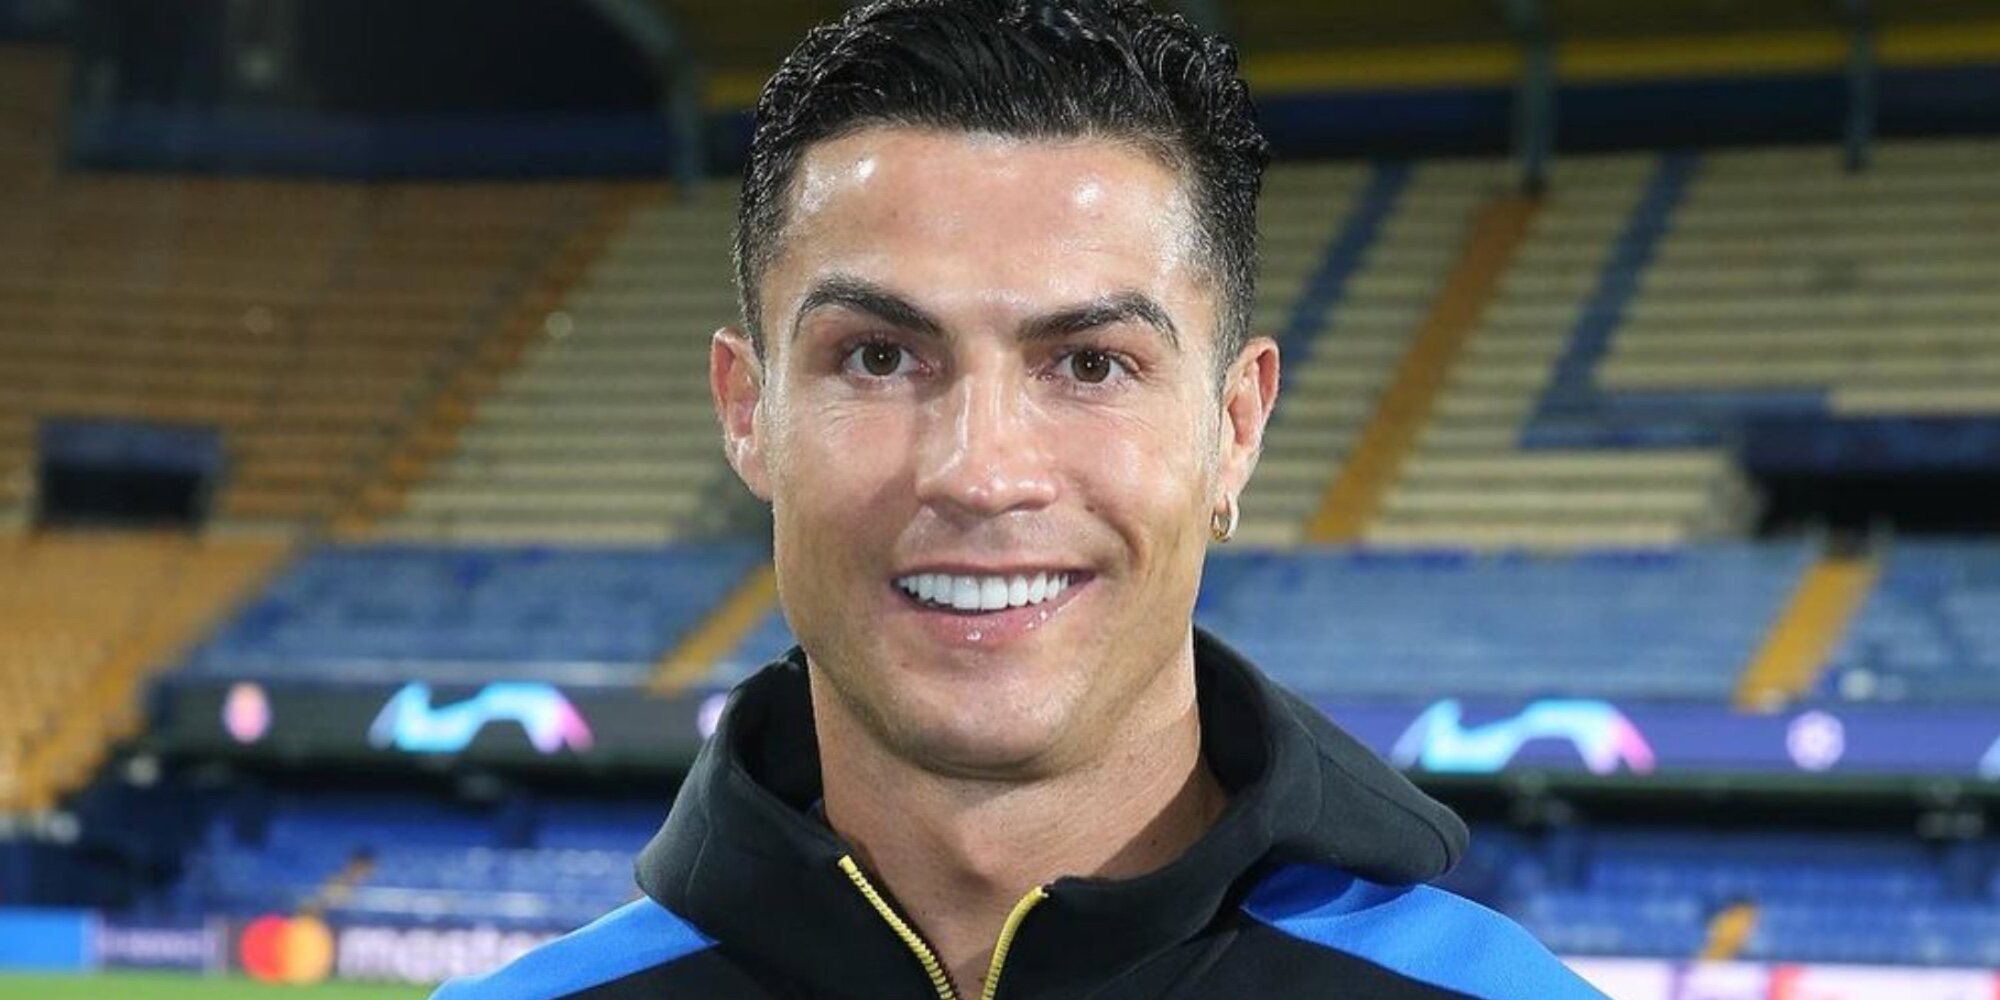 El último logro de Cristiano Ronaldo: se convierte en el mayor goleador de la historia